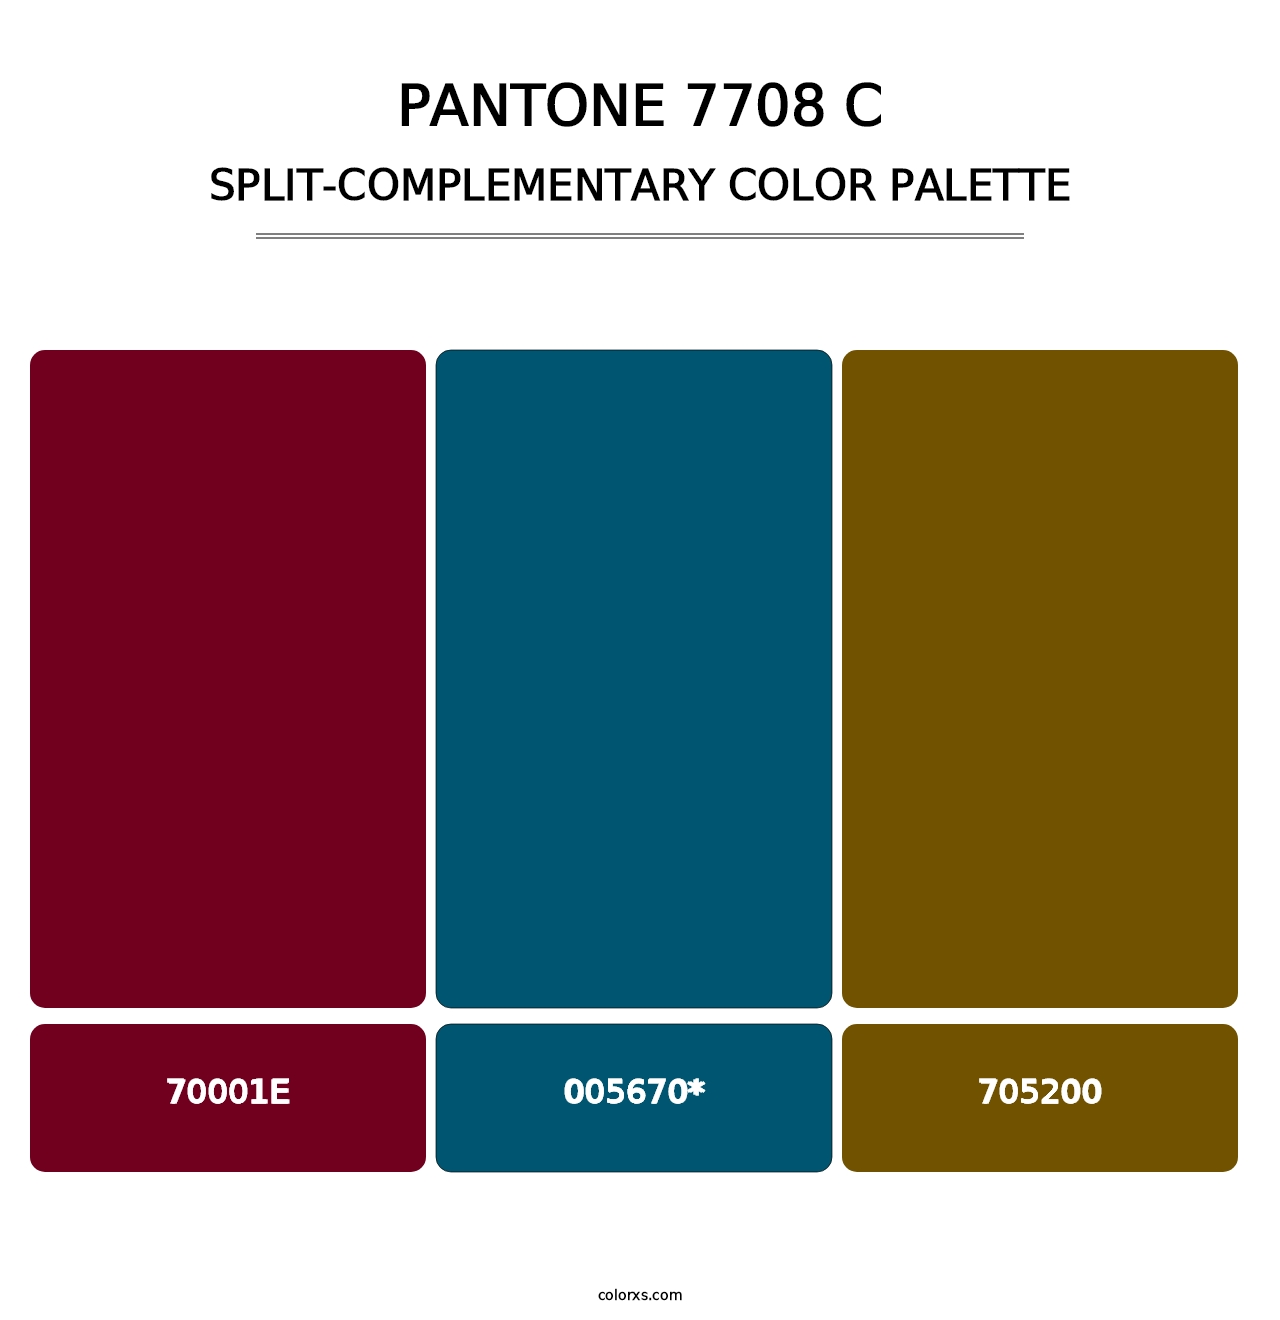 PANTONE 7708 C - Split-Complementary Color Palette